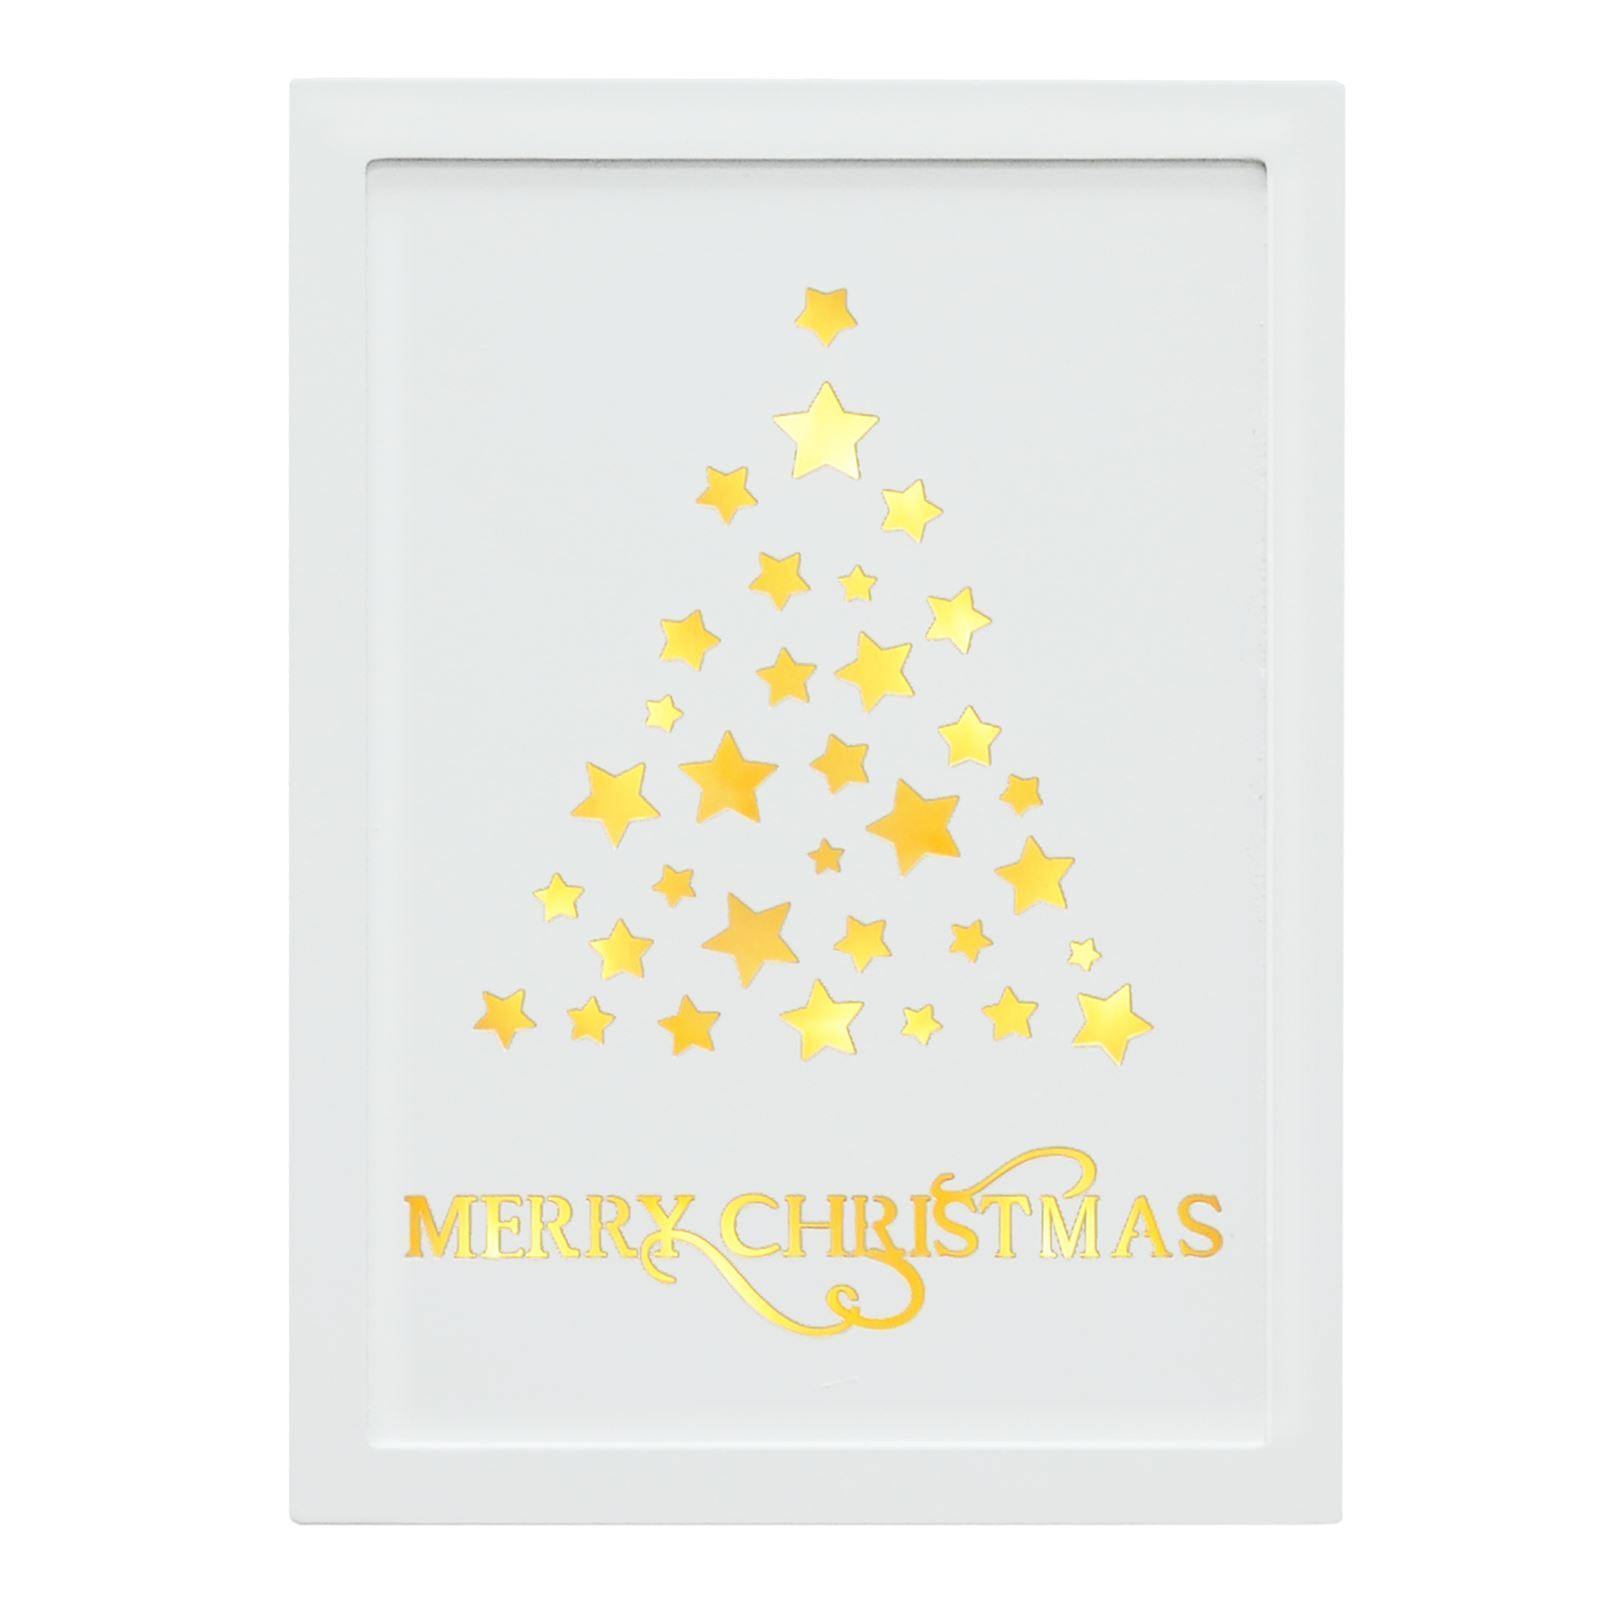 Mr Crimbo 11" Light Up White Wall Plaque Christmas Decoration - MrCrimbo.co.uk -XS5076 - Tree Design -decorations